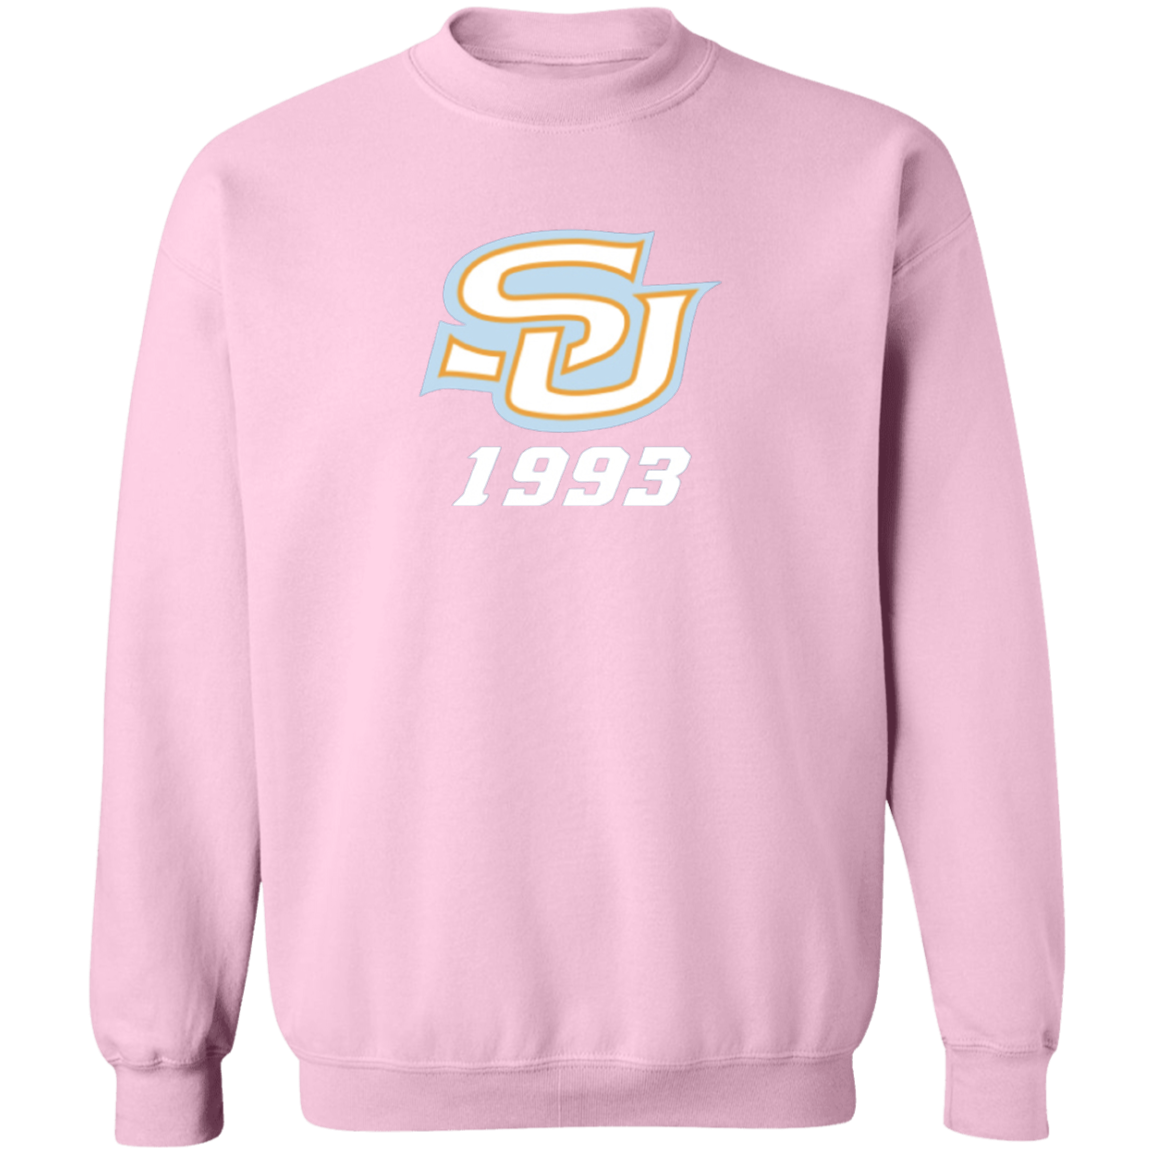 SU c/o 1993  G180 Crewneck Pullover Sweatshirt